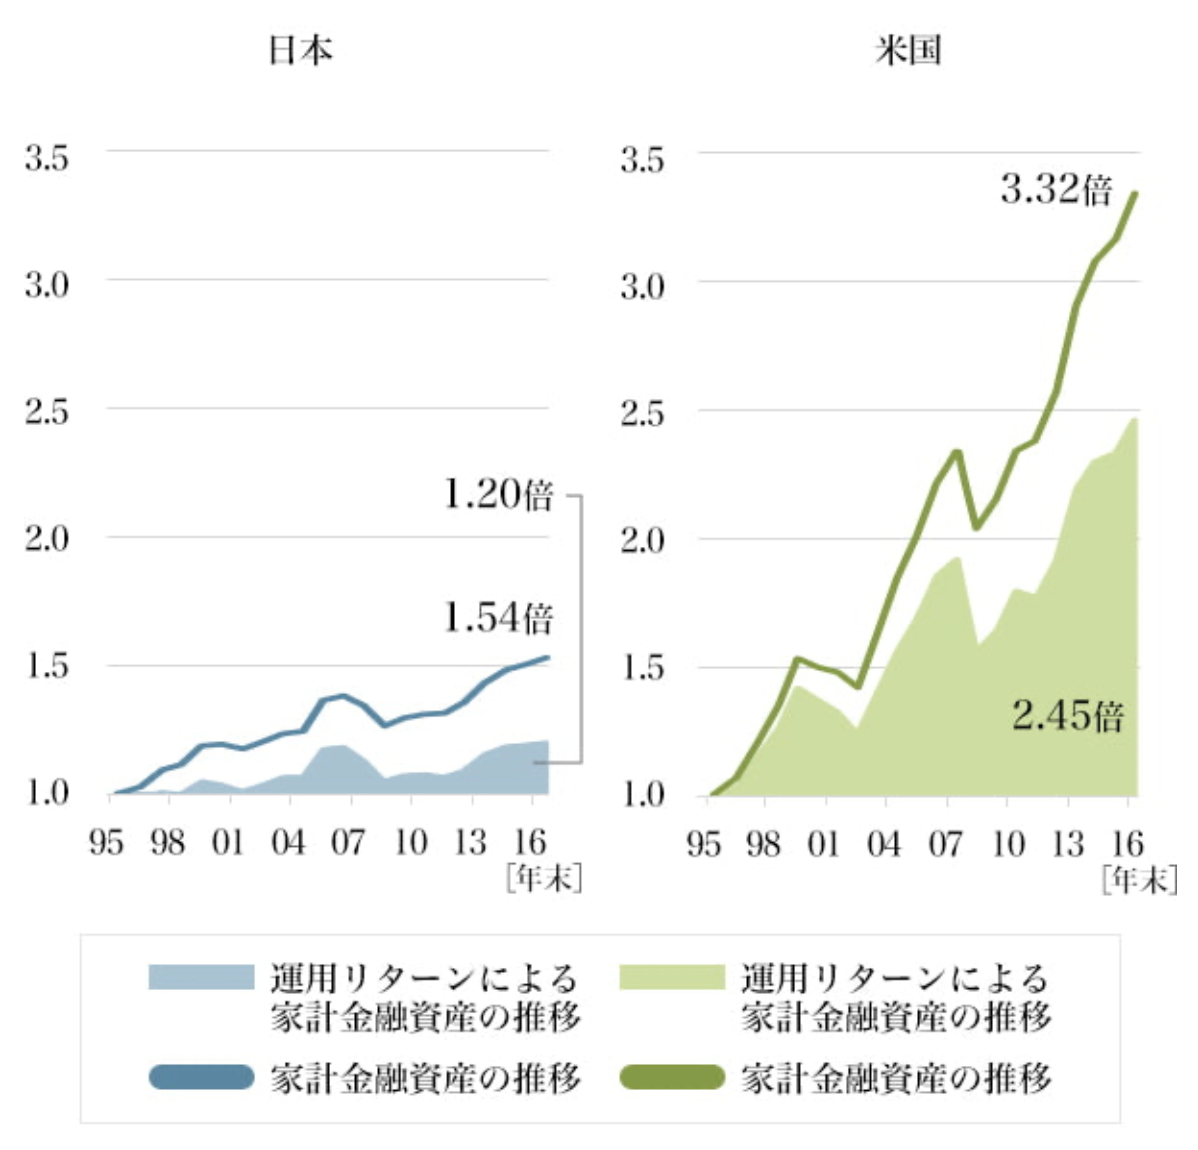 日米の家計金融資産の推移